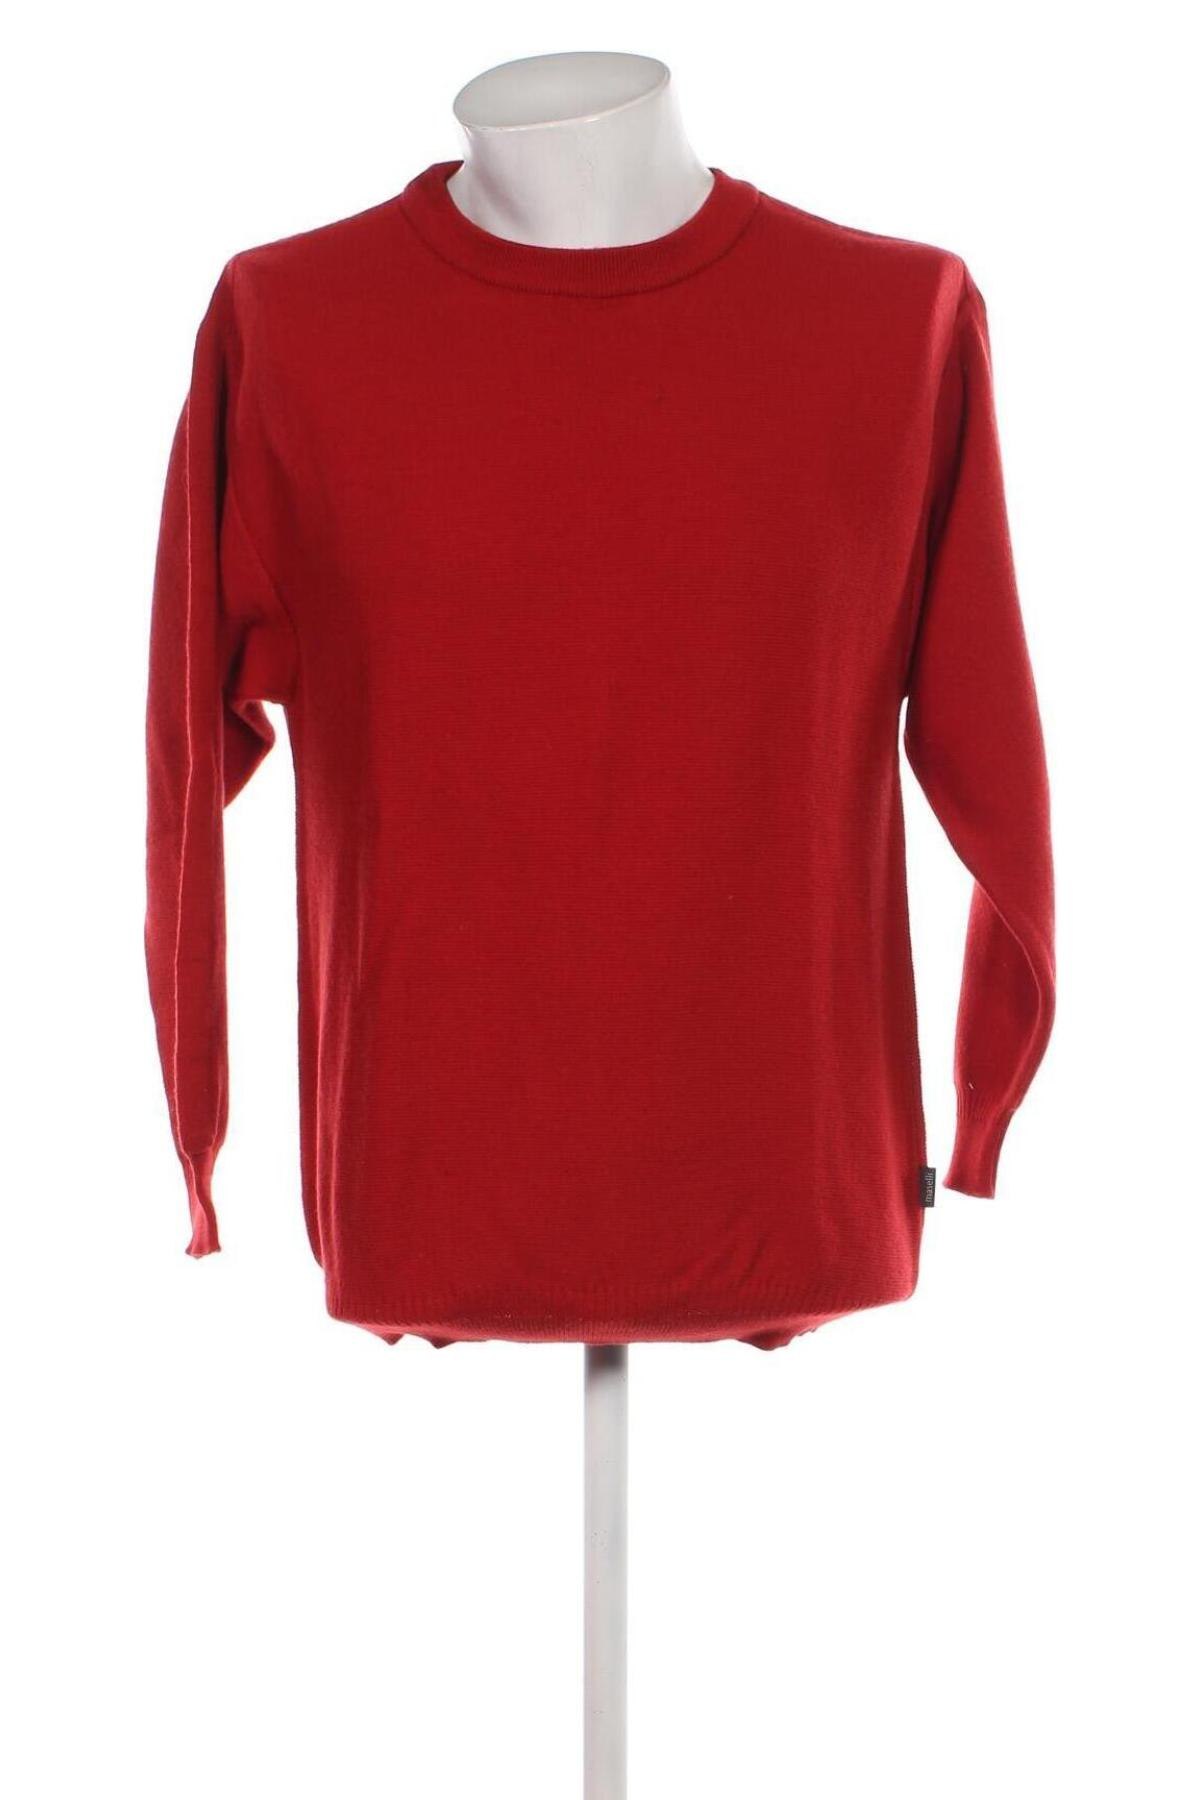 Ανδρικό πουλόβερ Maselli, Μέγεθος L, Χρώμα Κόκκινο, Τιμή 9,15 €